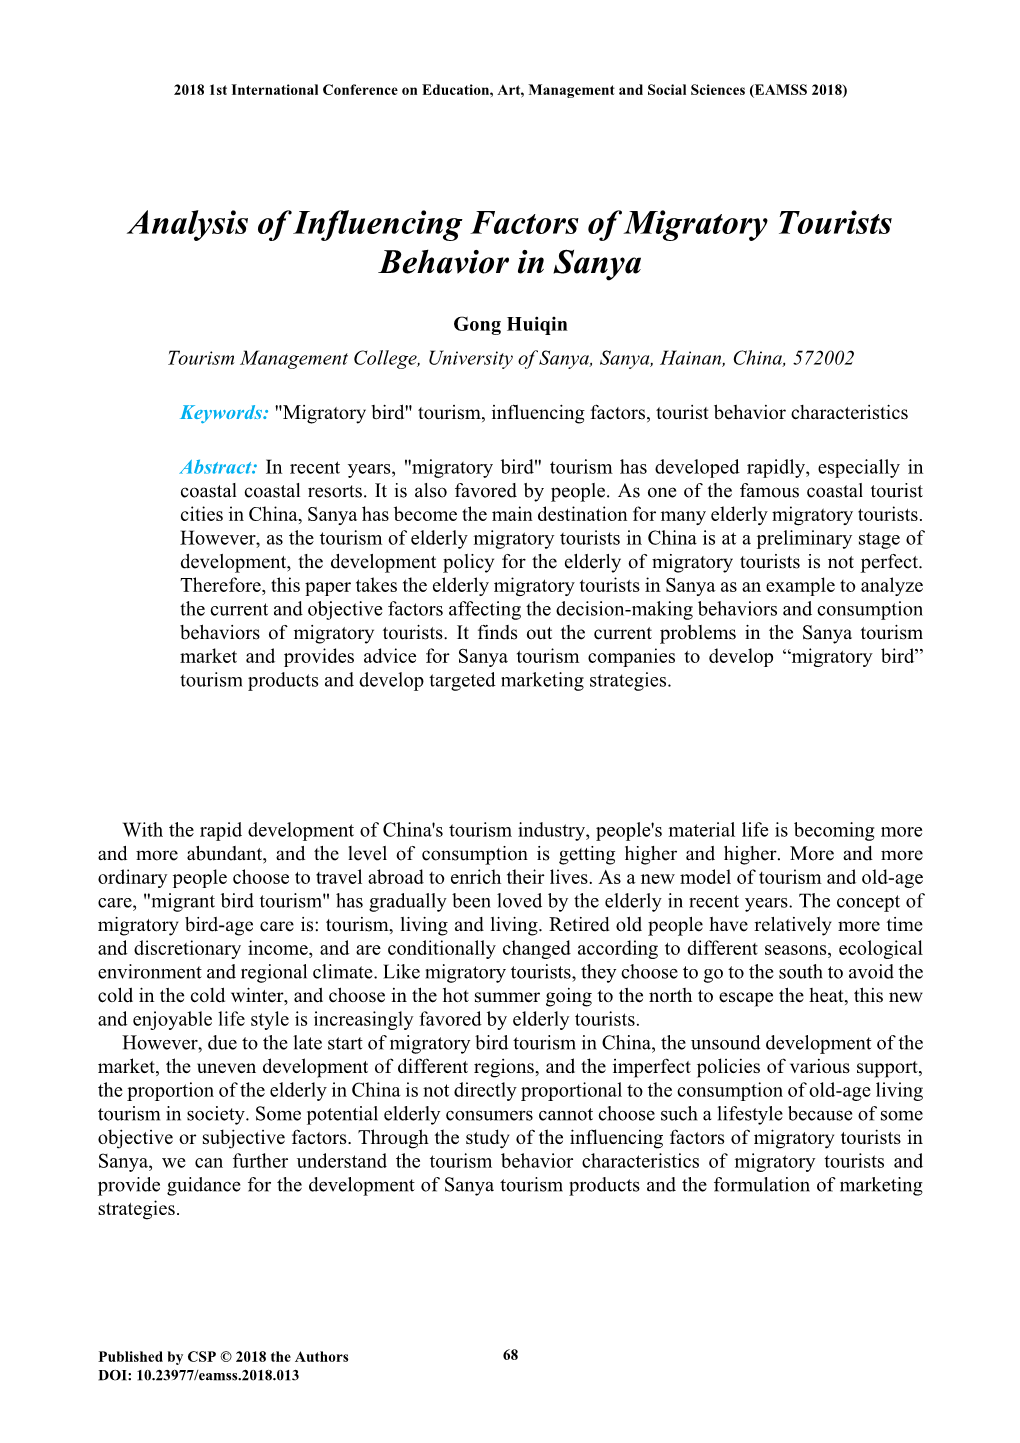 Analysis of Influencing Factors of Migratory Tourists Behavior in Sanya